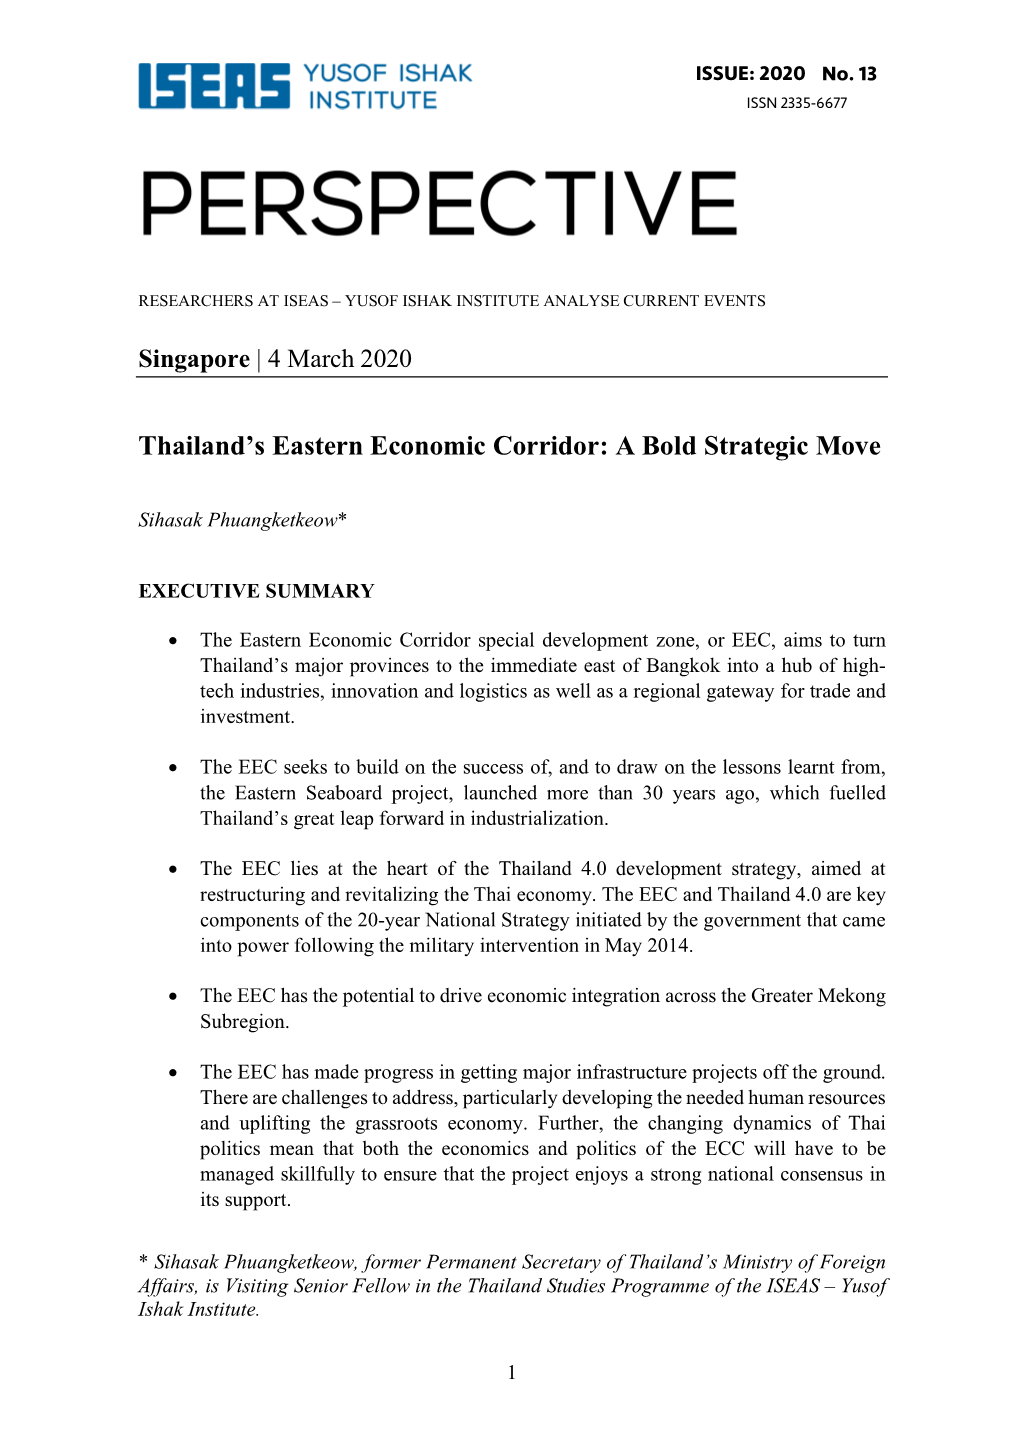 Thailand's Eastern Economic Corridor: a Bold Strategic Move